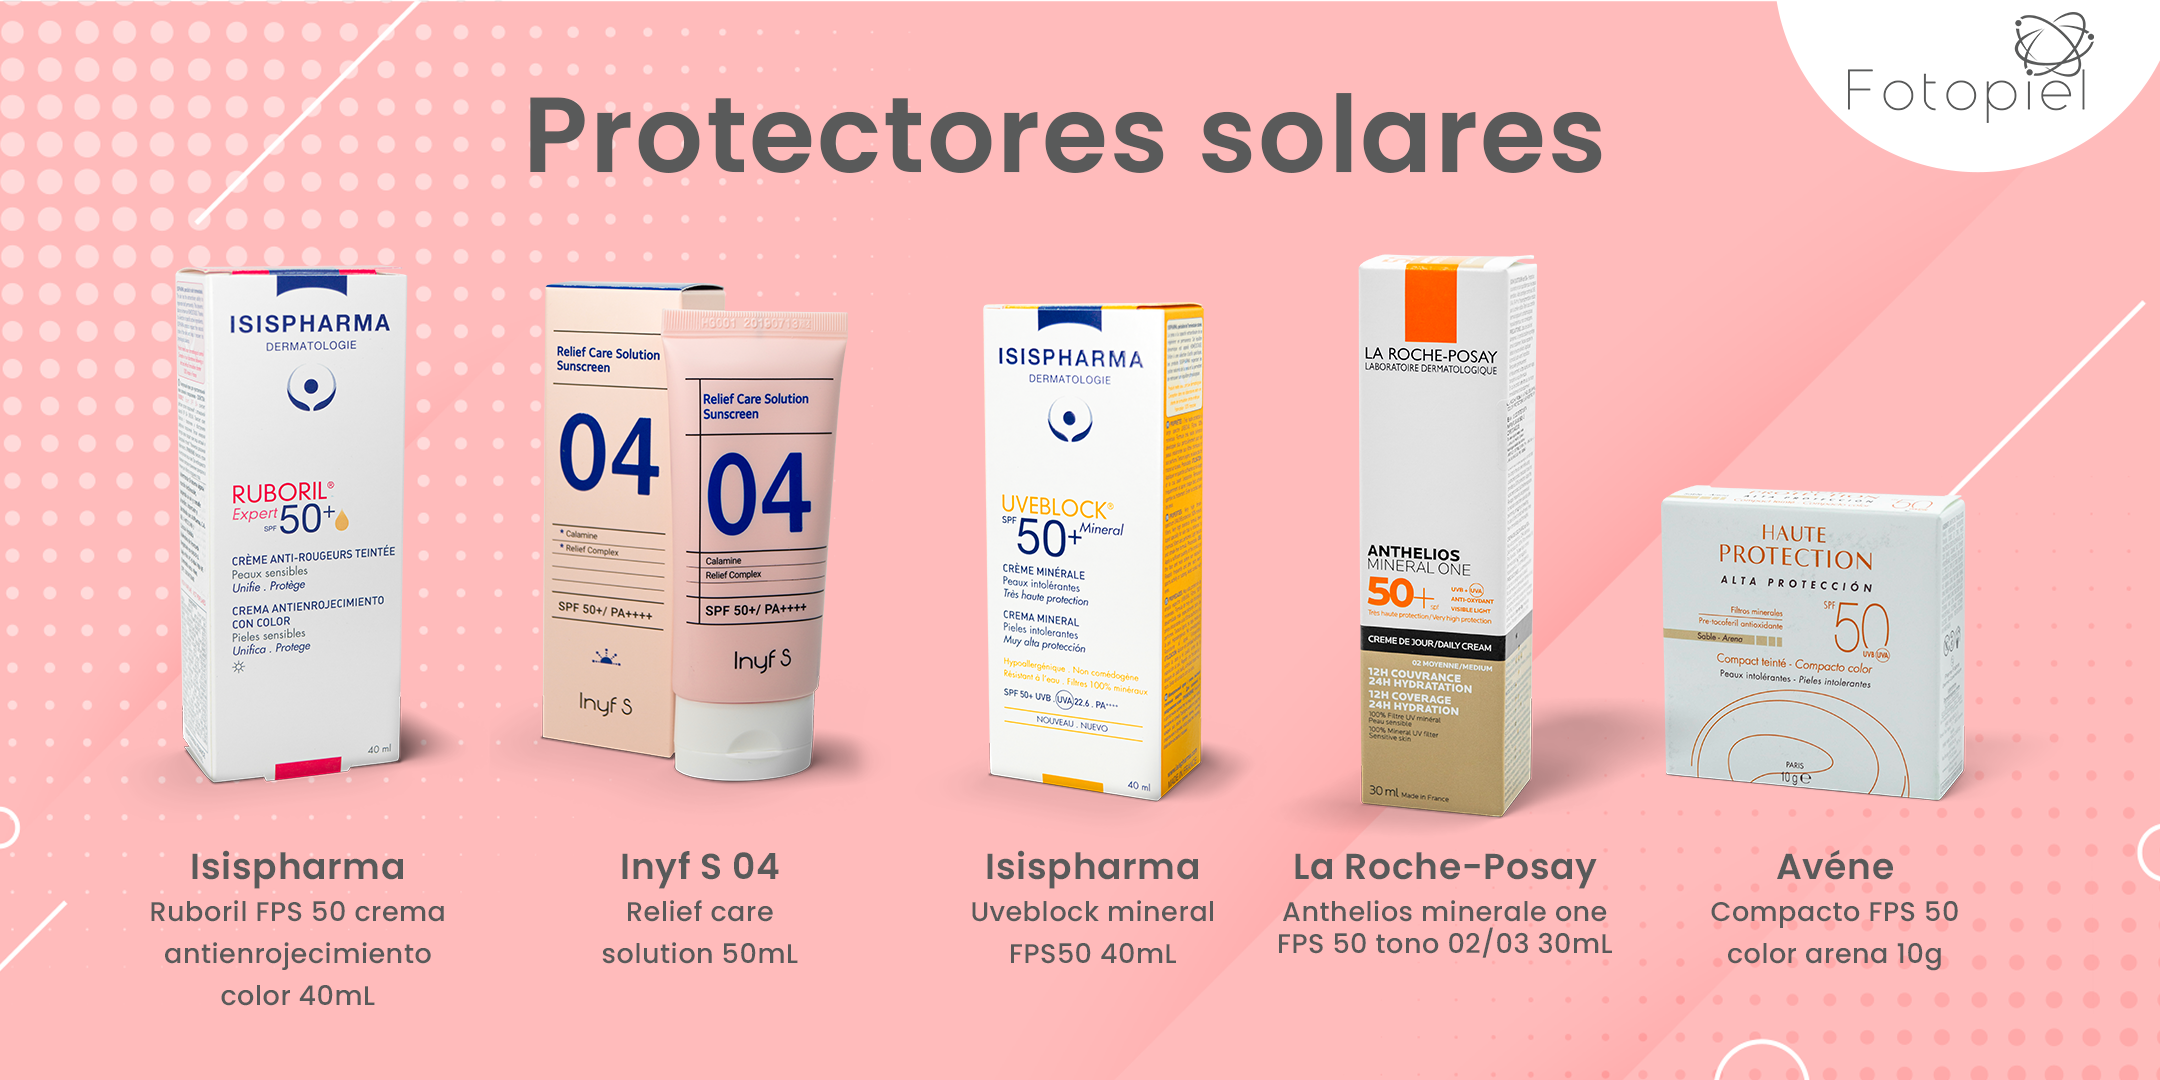 Protectores solares ideales para personas con piel sensible (Personas con resacea)